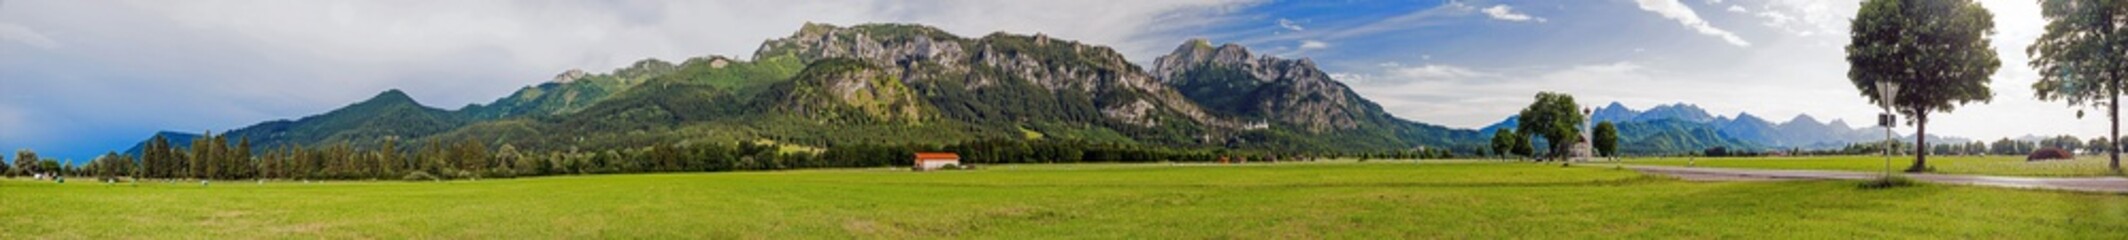 Ammergauer Alpen im Allgäu mit Neuschwanstein, Tegelberg und St. Coloman, Bayern